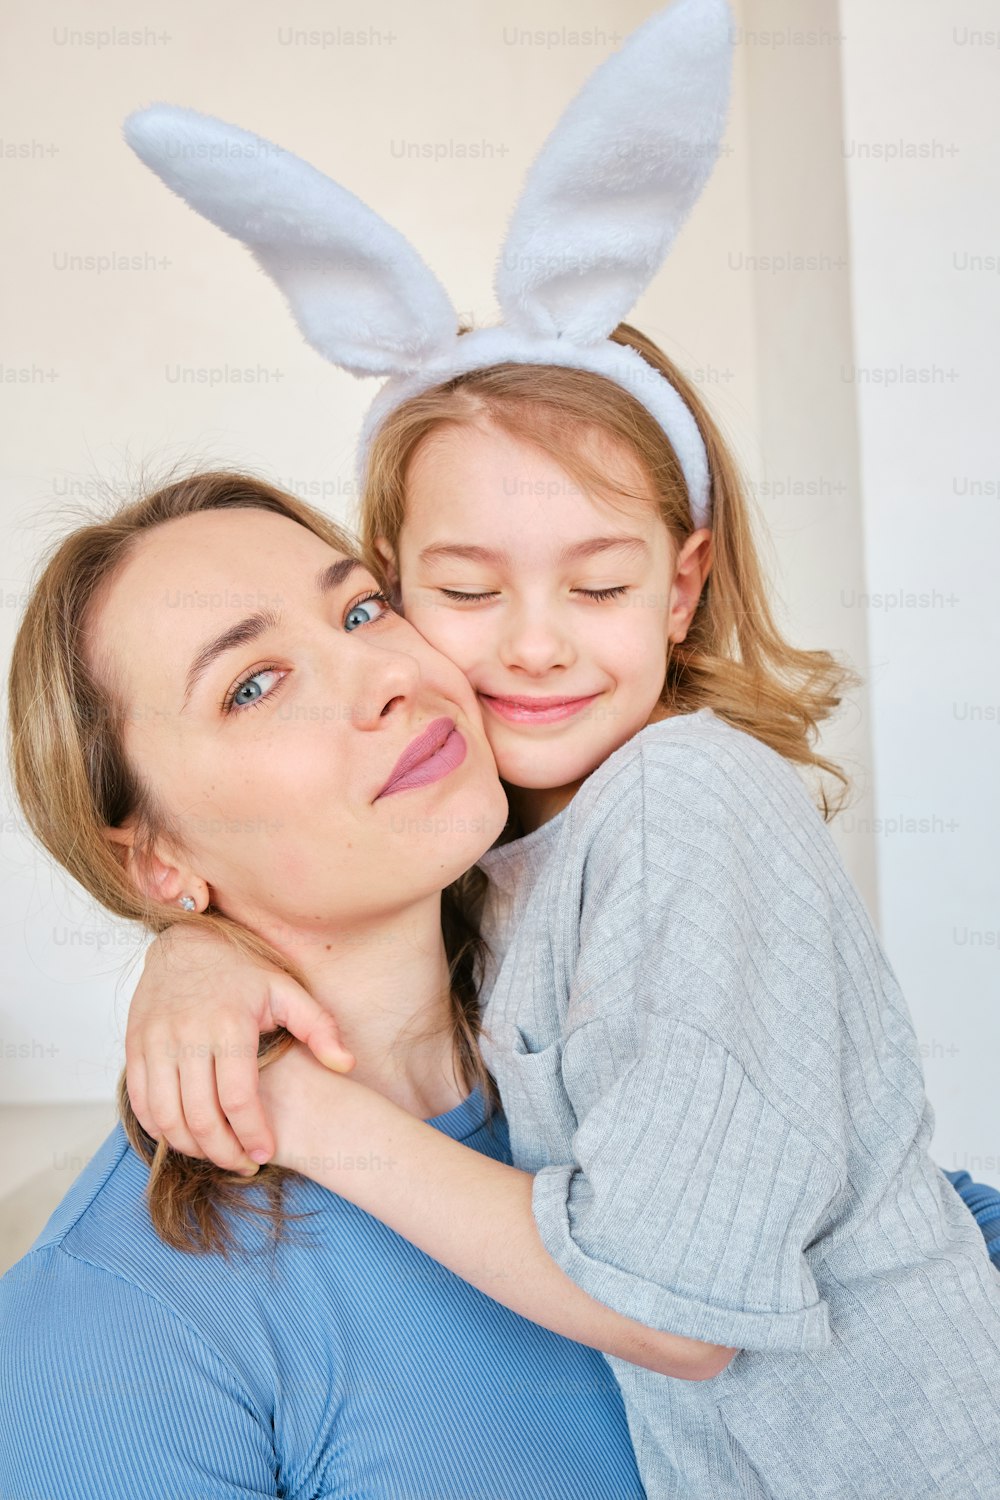 a woman hugging a little girl wearing bunny ears